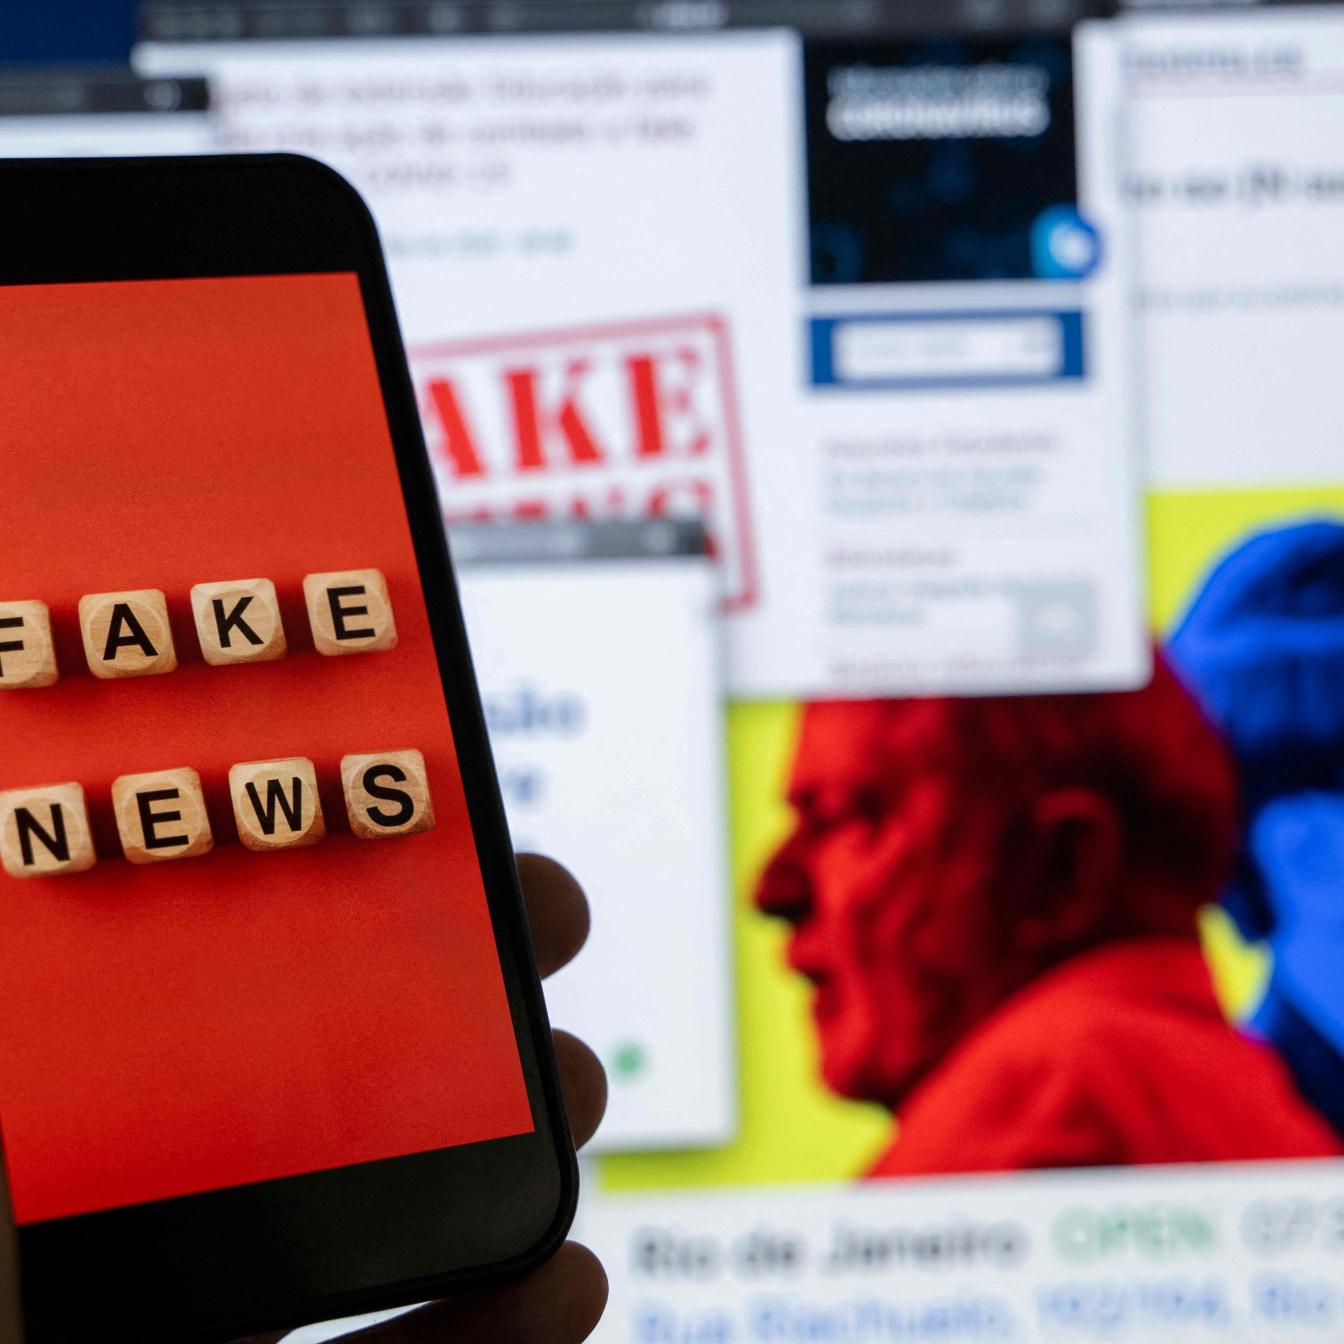 Vor einem Computerbildschirm wird ein Smartphone hochgehalten, auf dem "Fake News" zu lesen ist